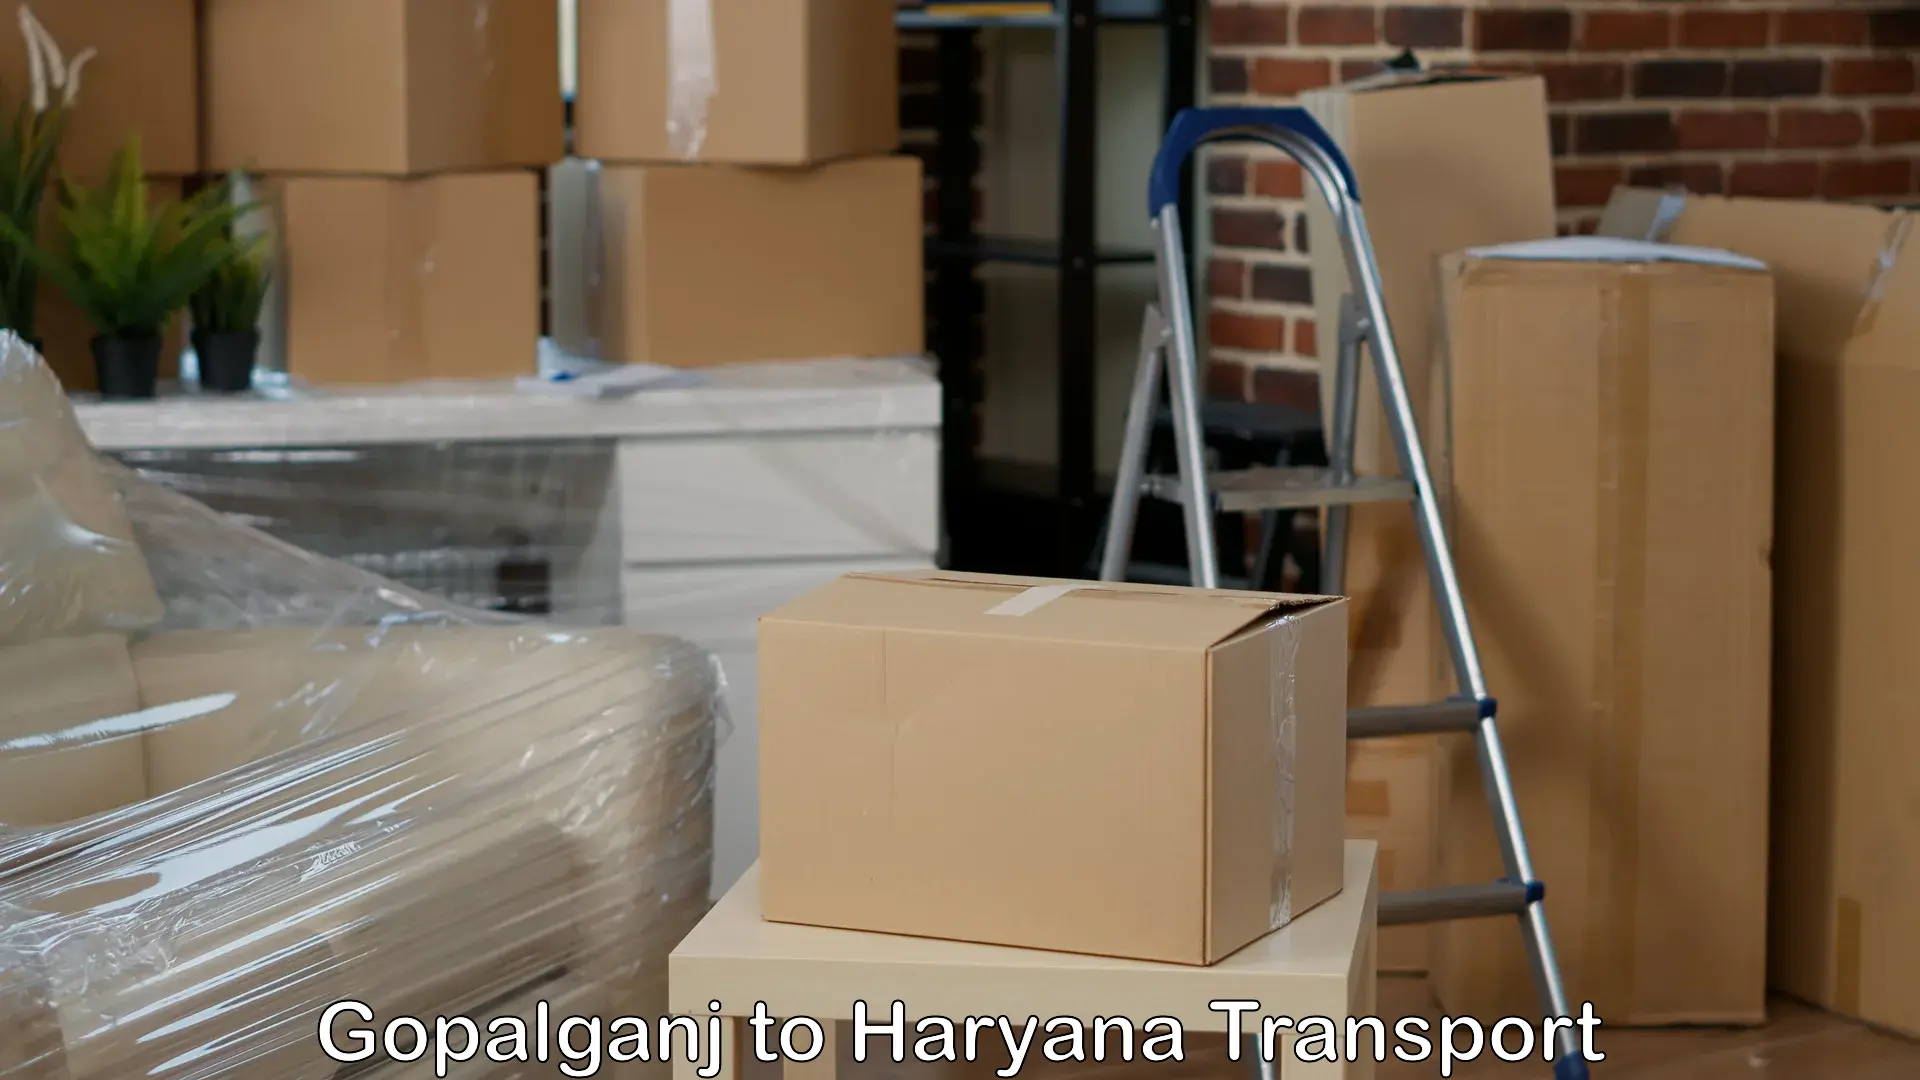 Delivery service Gopalganj to Ambala